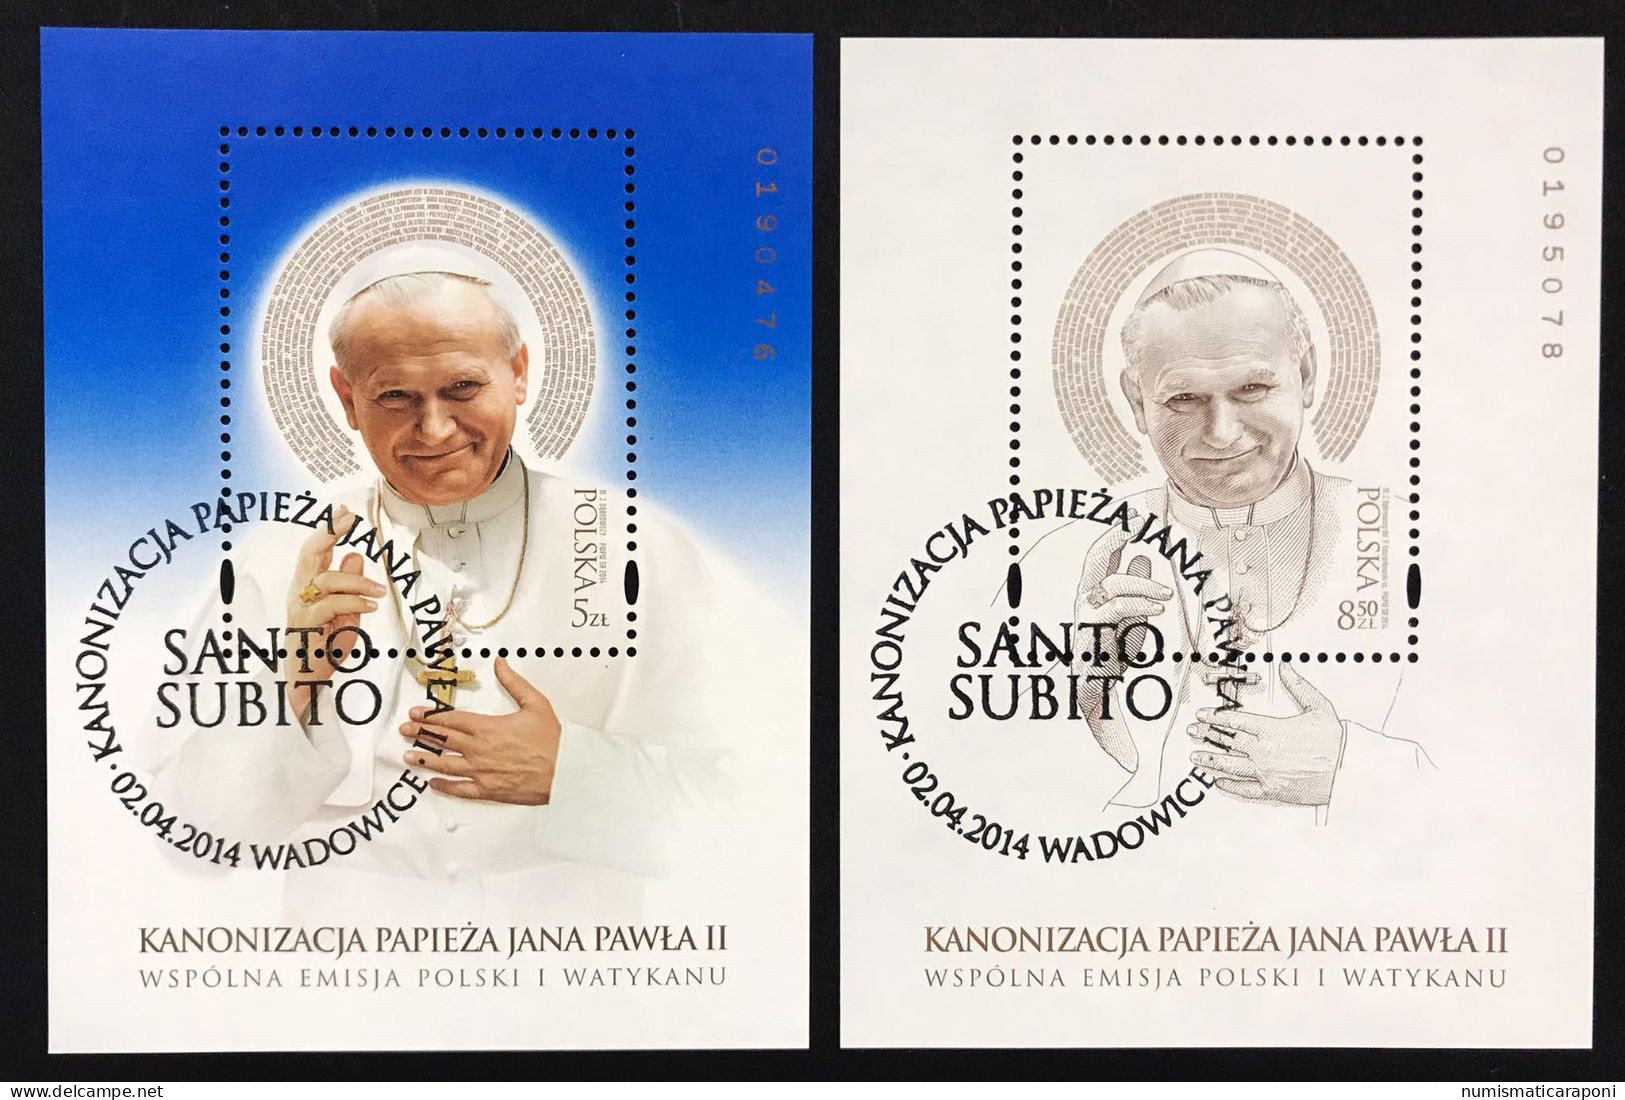 POLONIA POLSKA 2014 FOGLIETTO Canonizzazione G.P. II°  EMISSIONE CONGIUNTA VATICANO Usati COD F.002 - Used Stamps